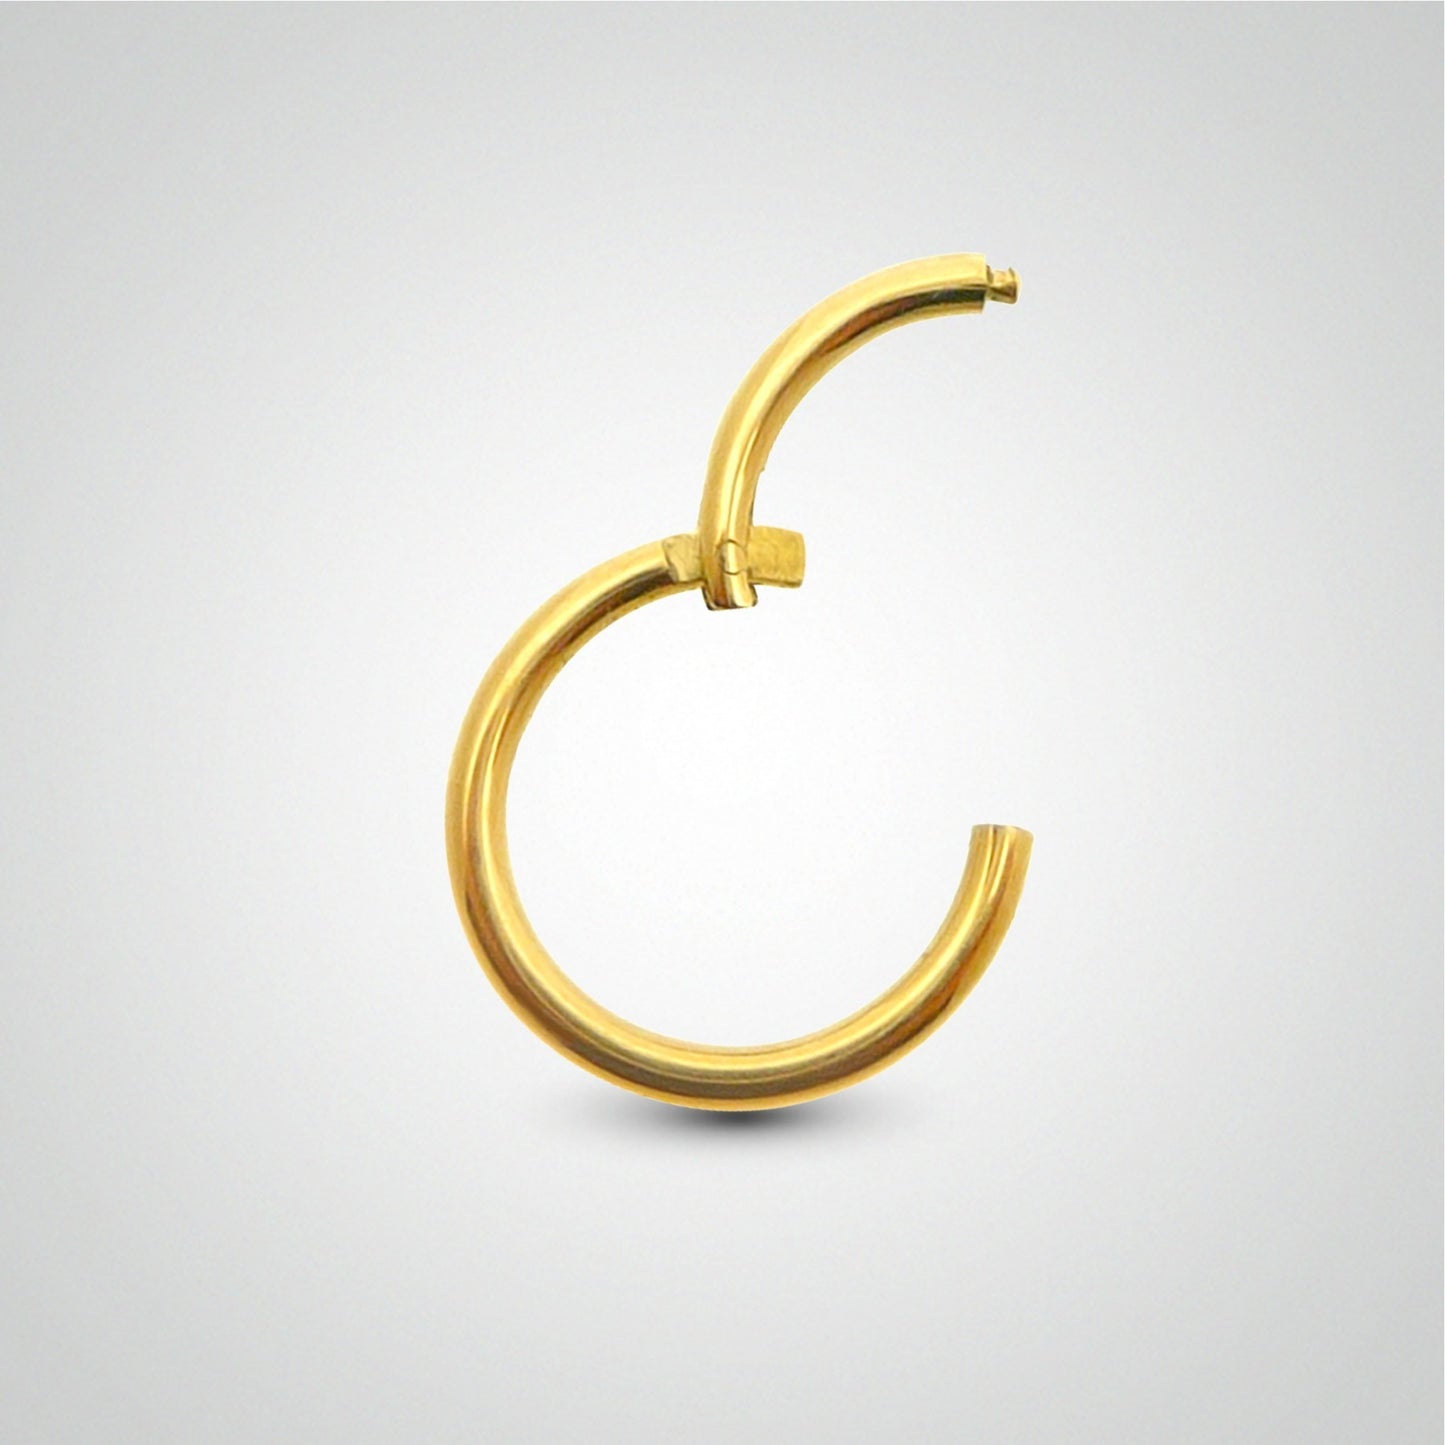 Piercing antihelix anneau or jaune avec zircons (charnière)